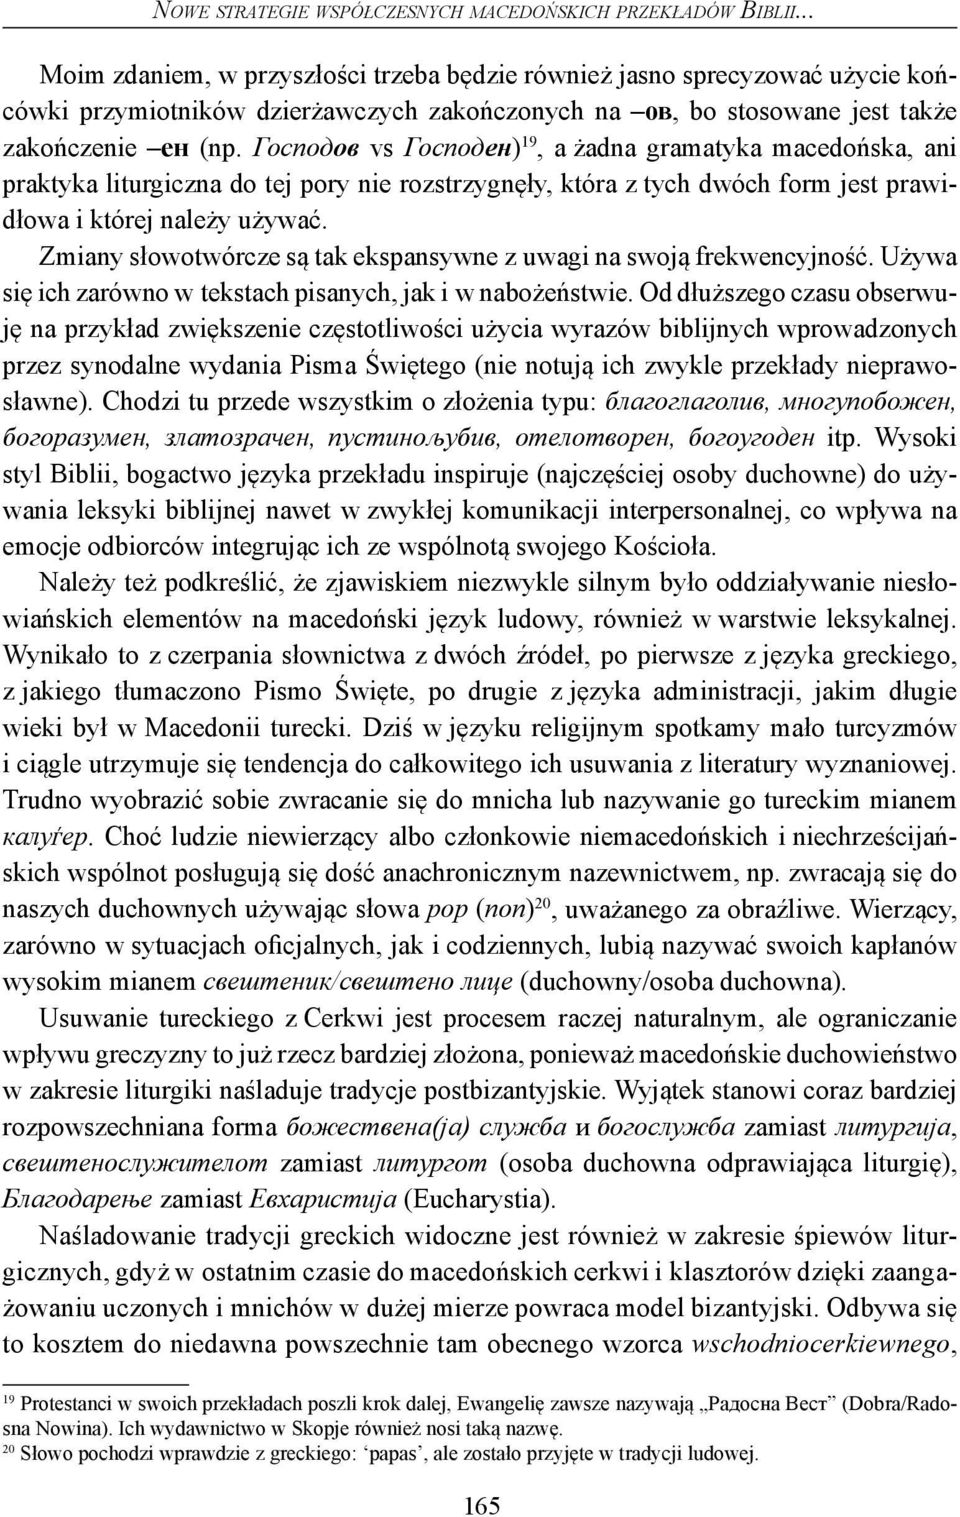 Господов vs Господен) 19, a żadna gramatyka macedońska, ani praktyka liturgiczna do tej pory nie rozstrzygnęły, która z tych dwóch form jest prawidłowa i której należy używać.